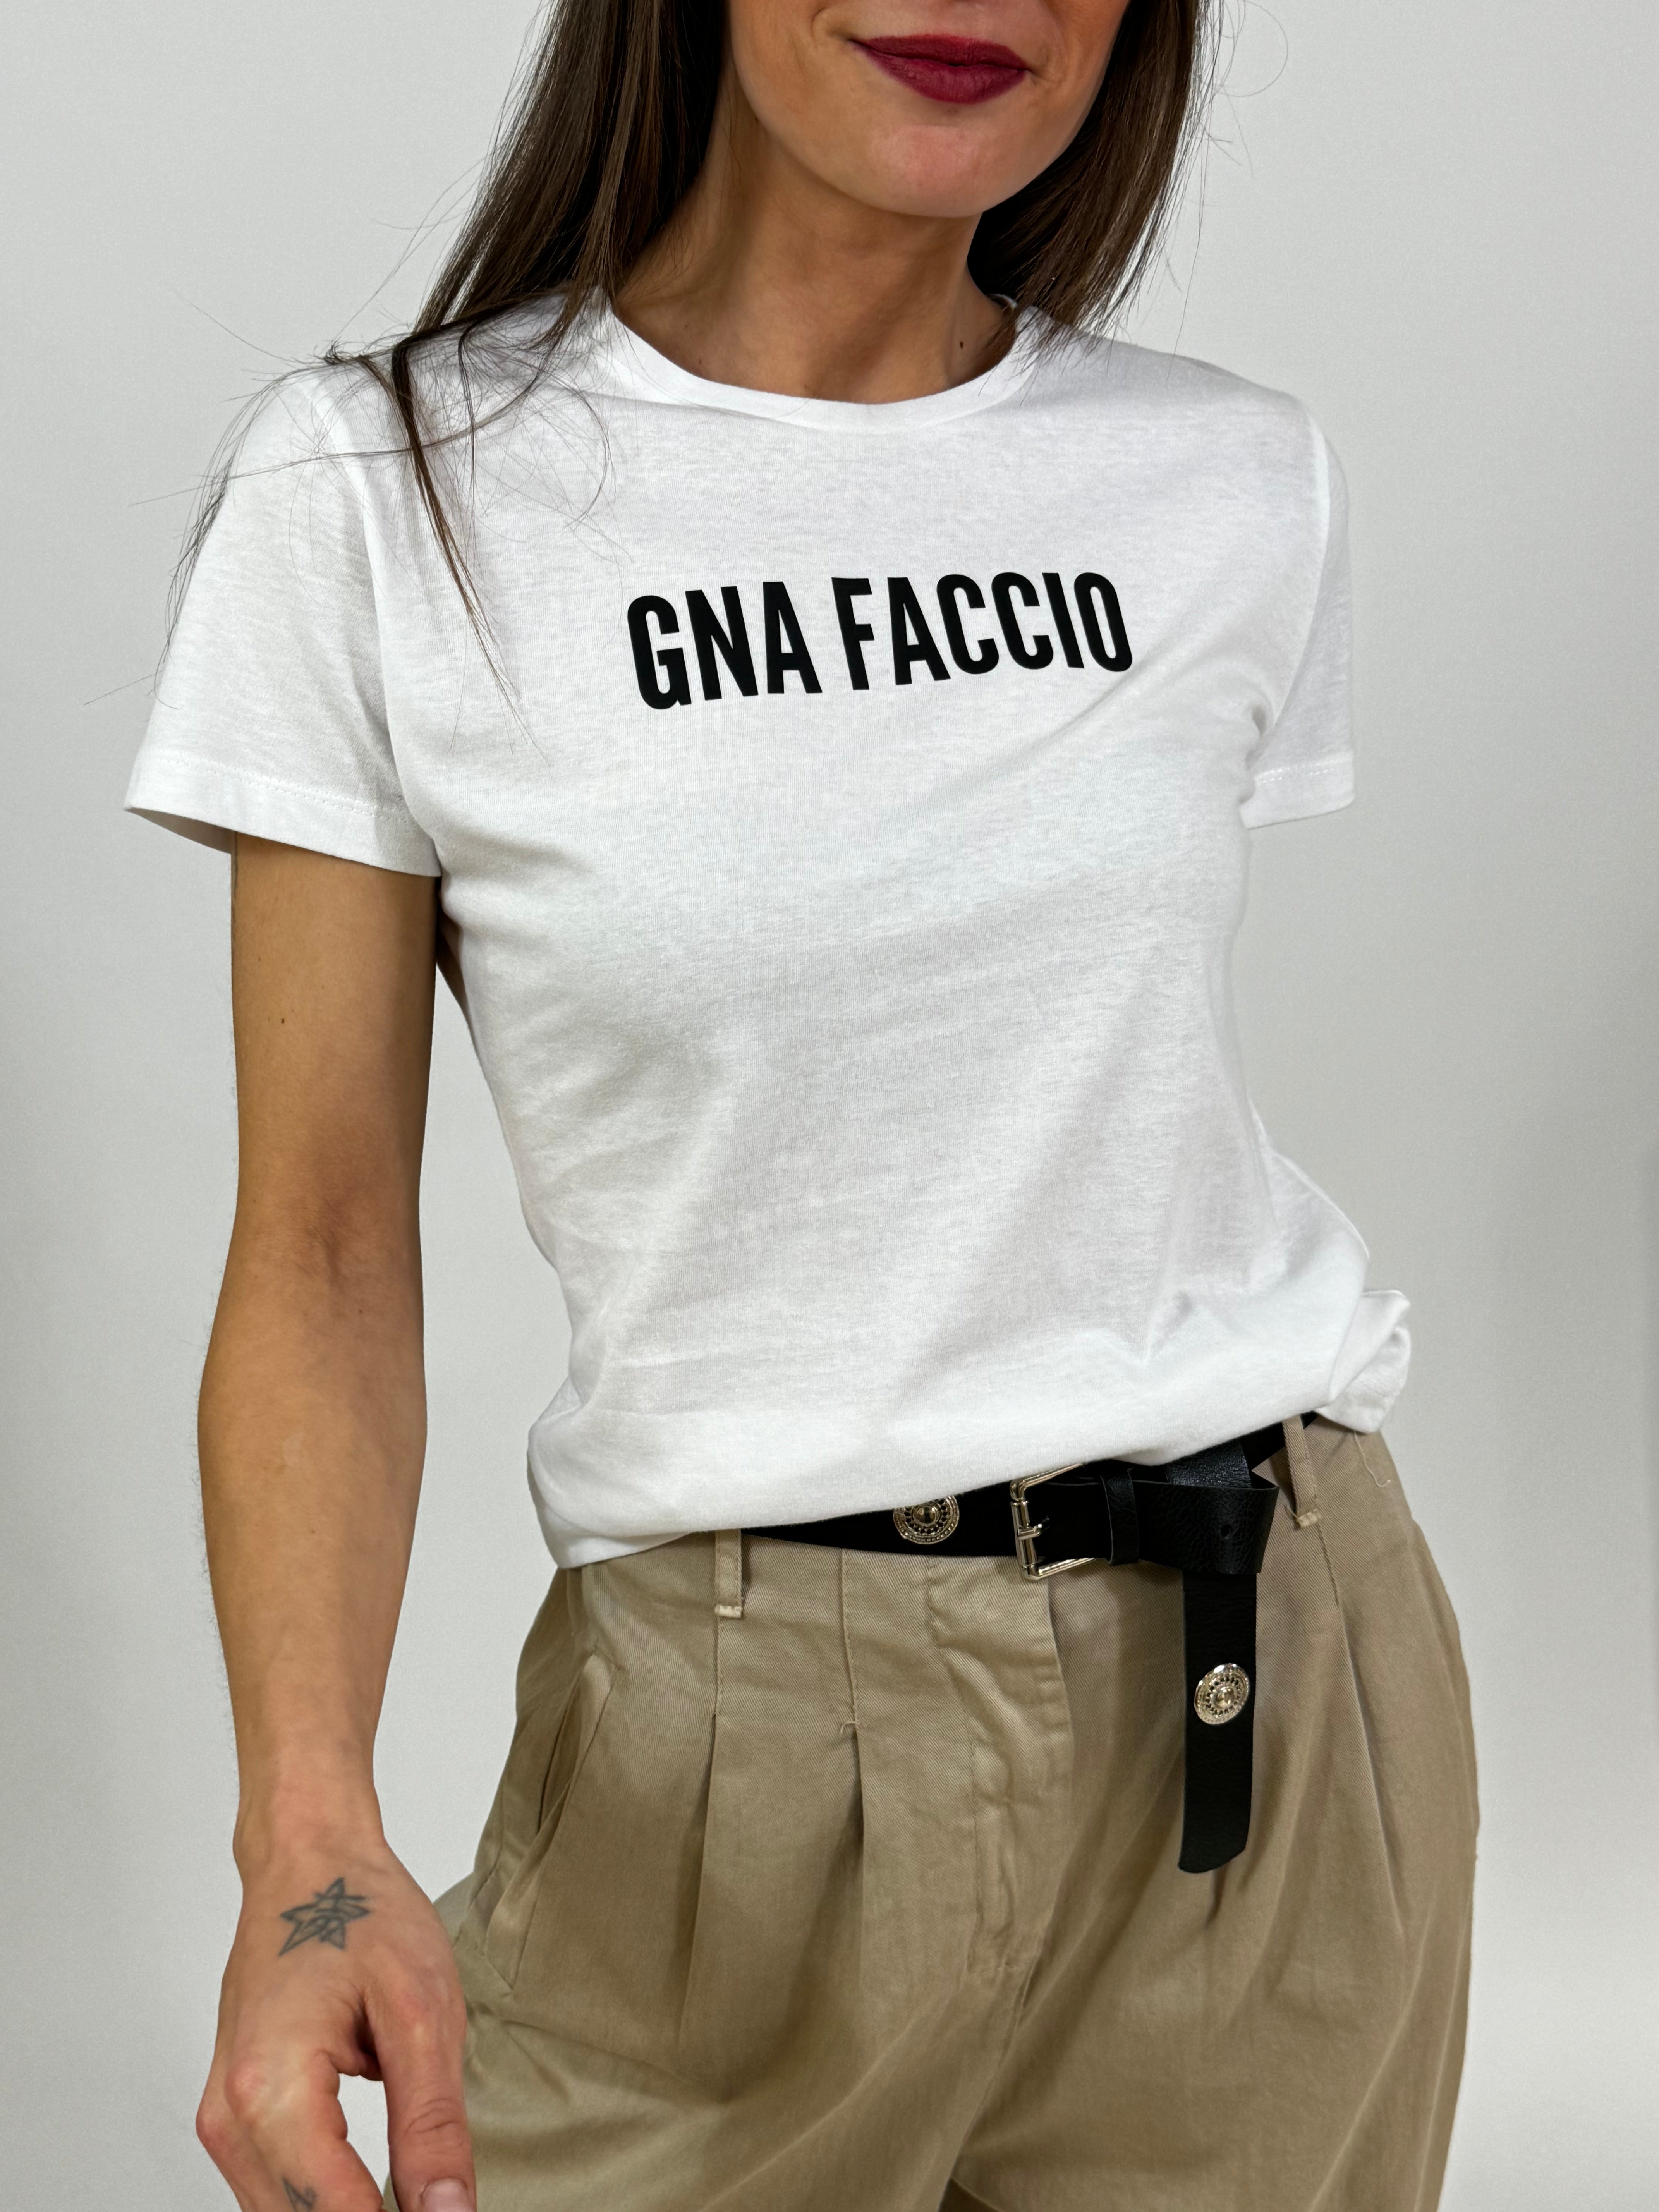 T-shirt Susy Mix GNA FACCIO